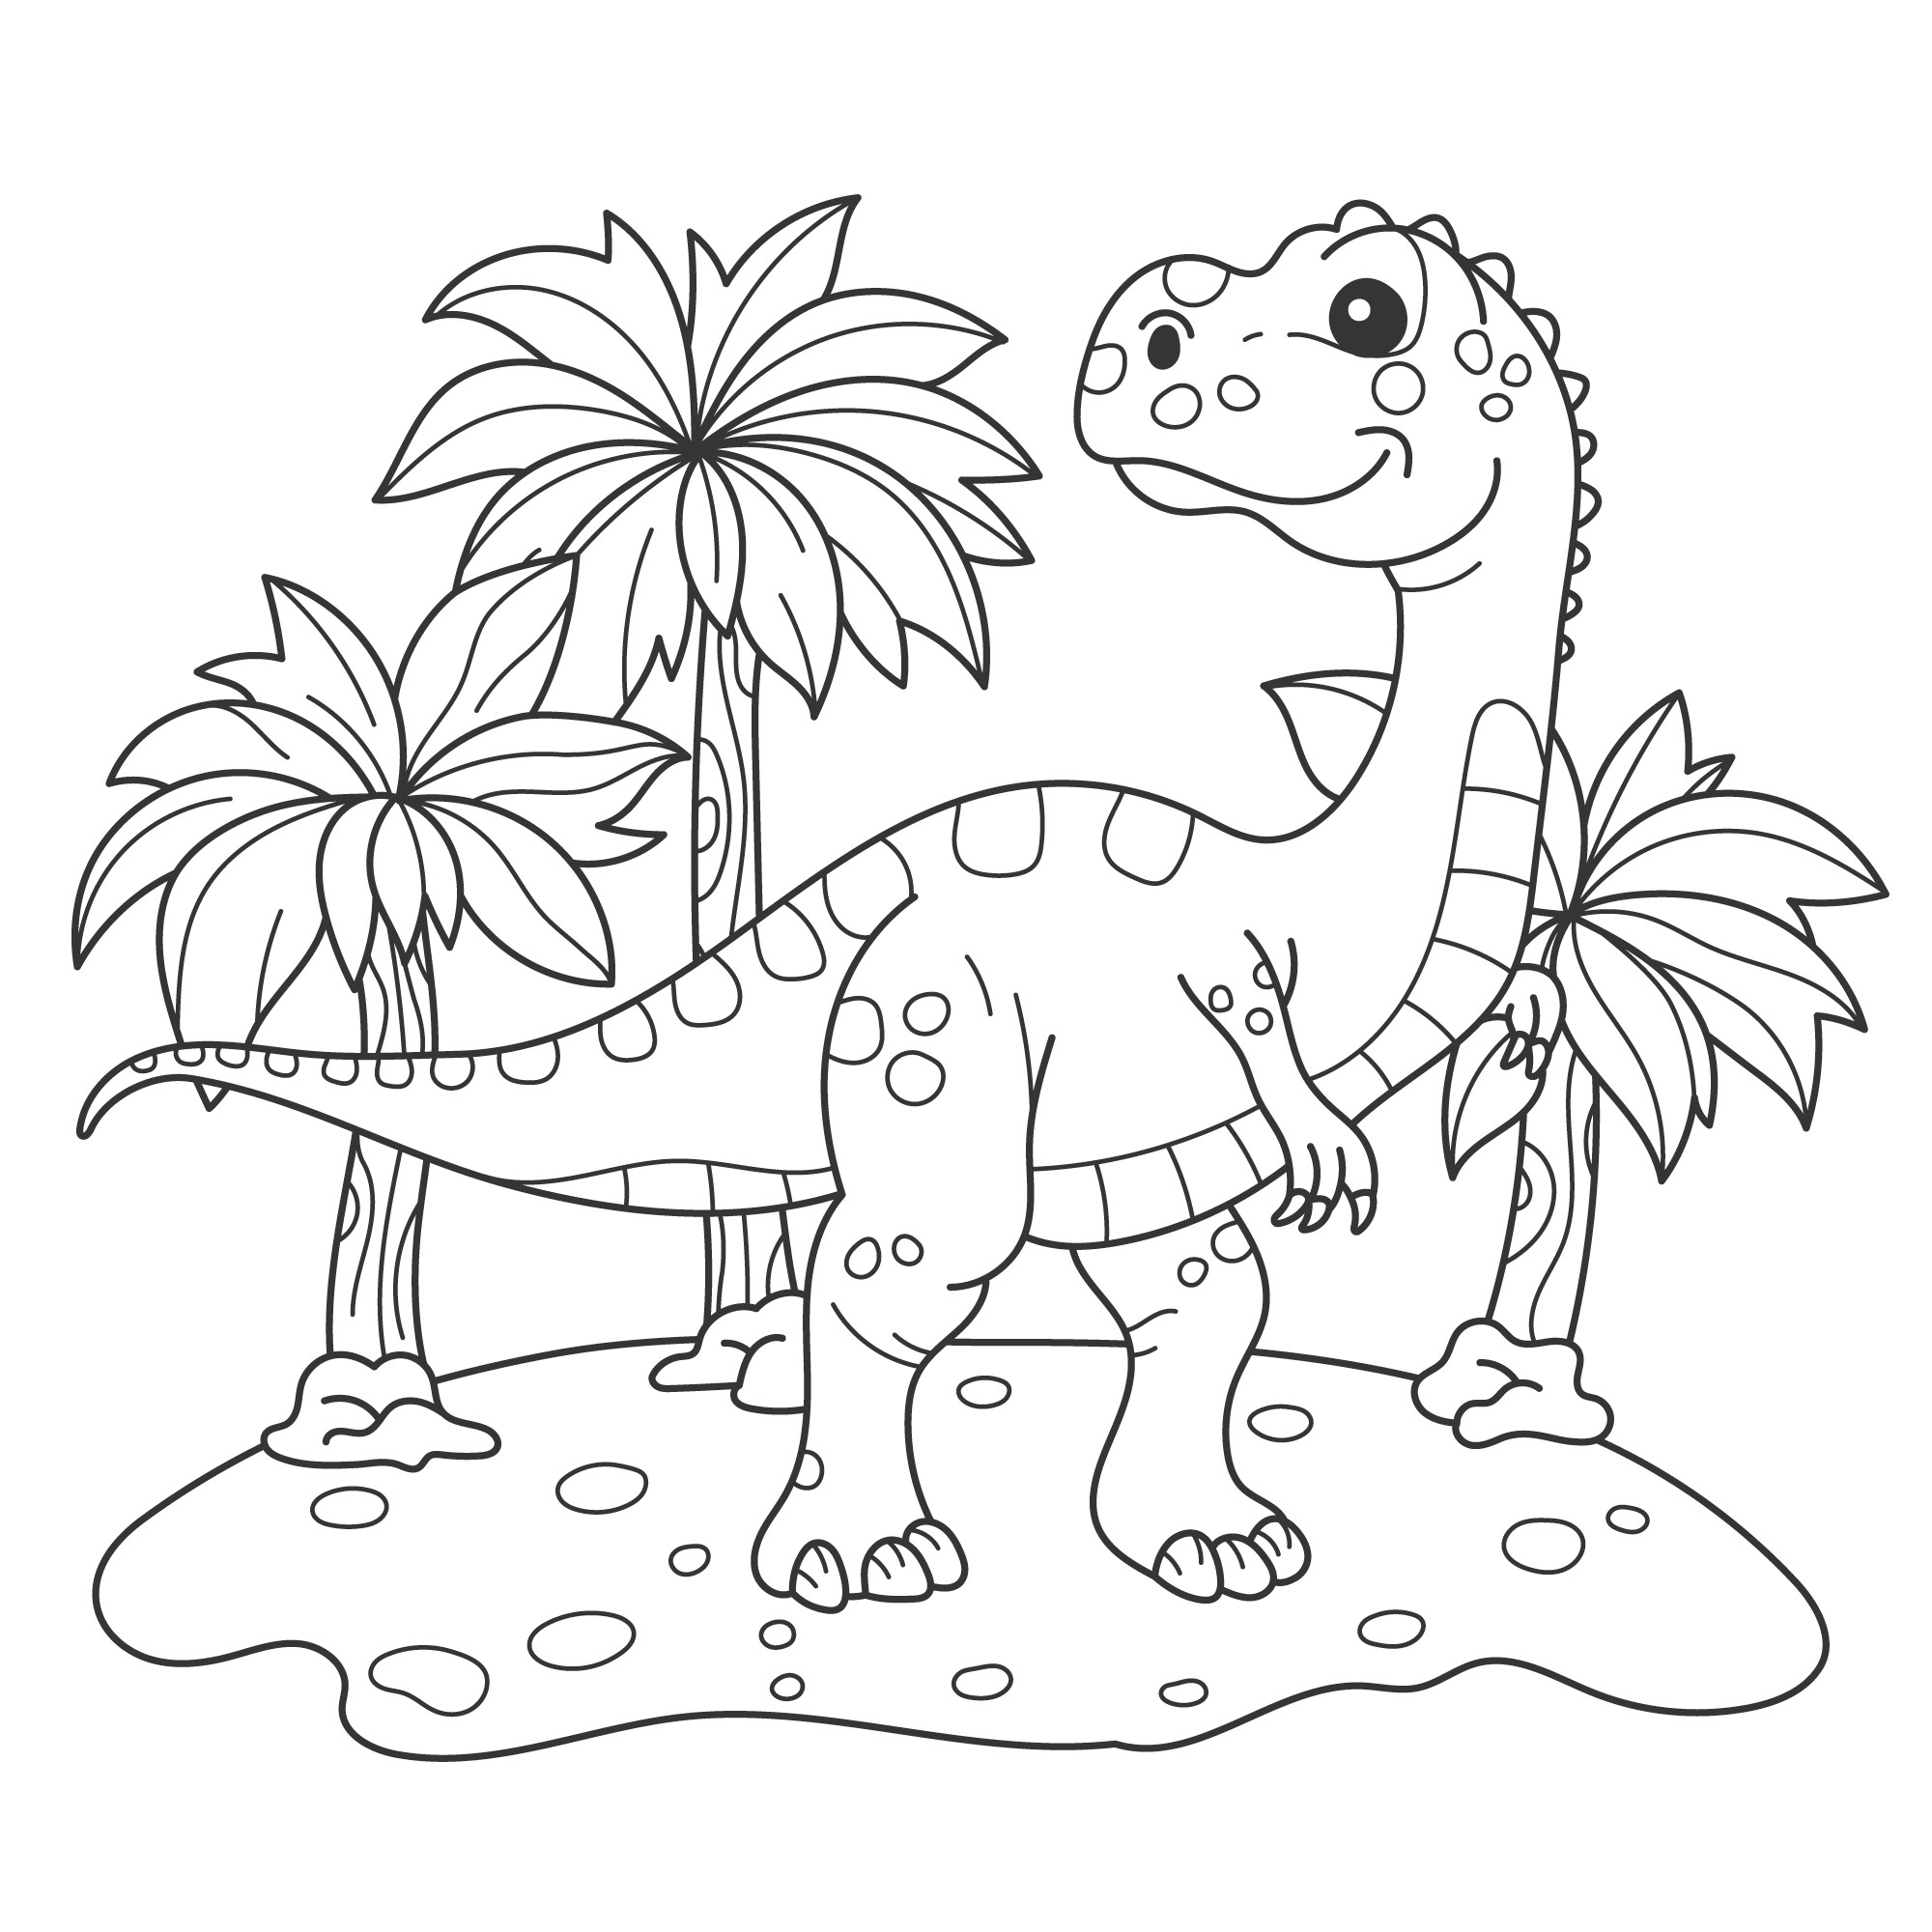 Раскраска для детей: динозавр раптор